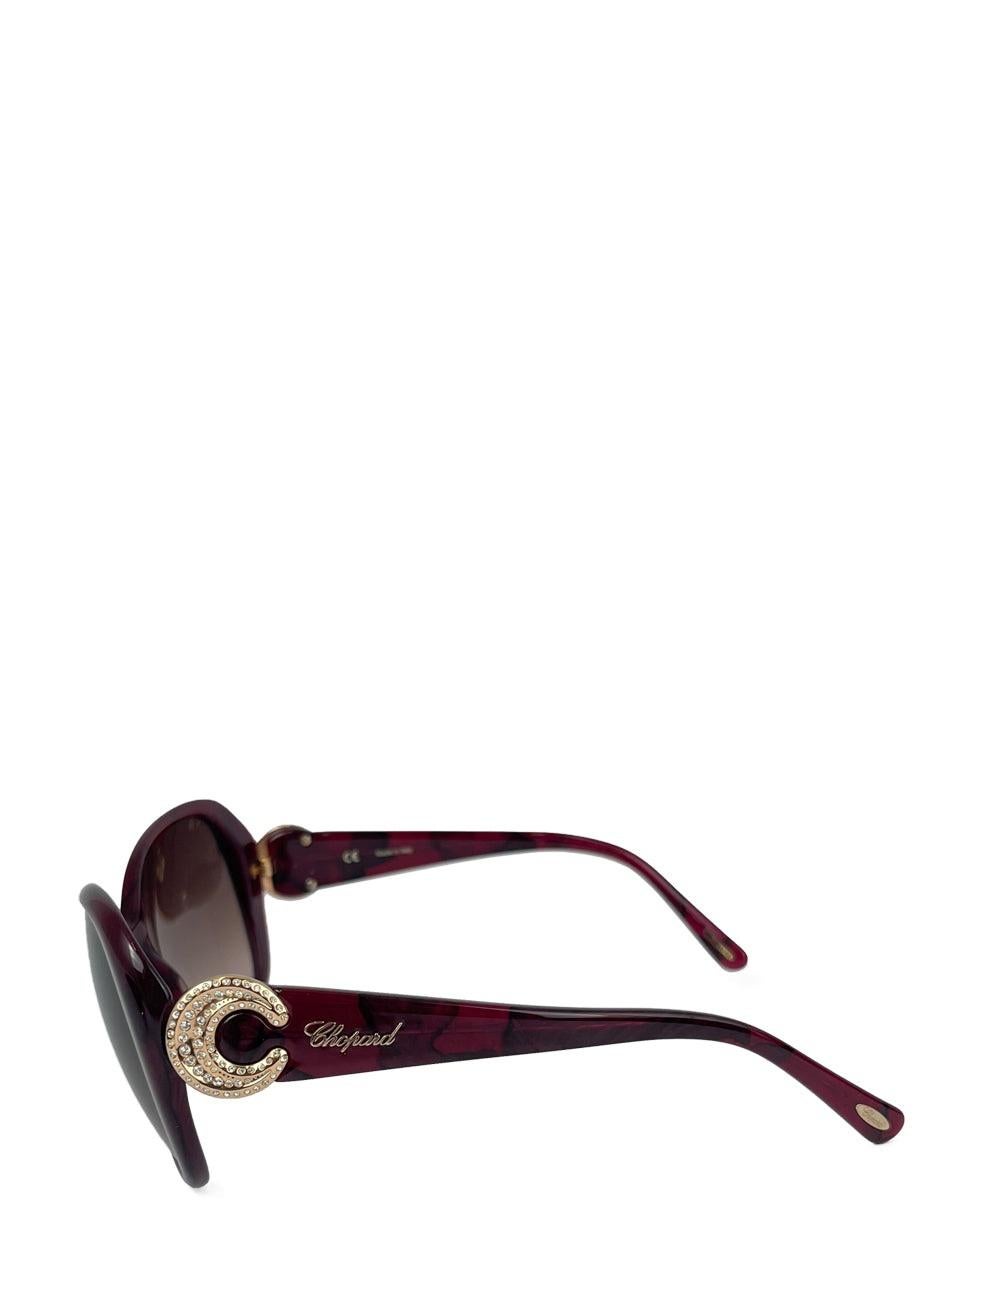 Chopard Deep Purple Katzenaugen-Sonnenbrille

Zusätzliche Informationen:
Hardware: Acetat
Linse: Braun
Größe: 58/17/140
Zustand: Ausgezeichnet
Extras: Inklusive Originalverpackung
